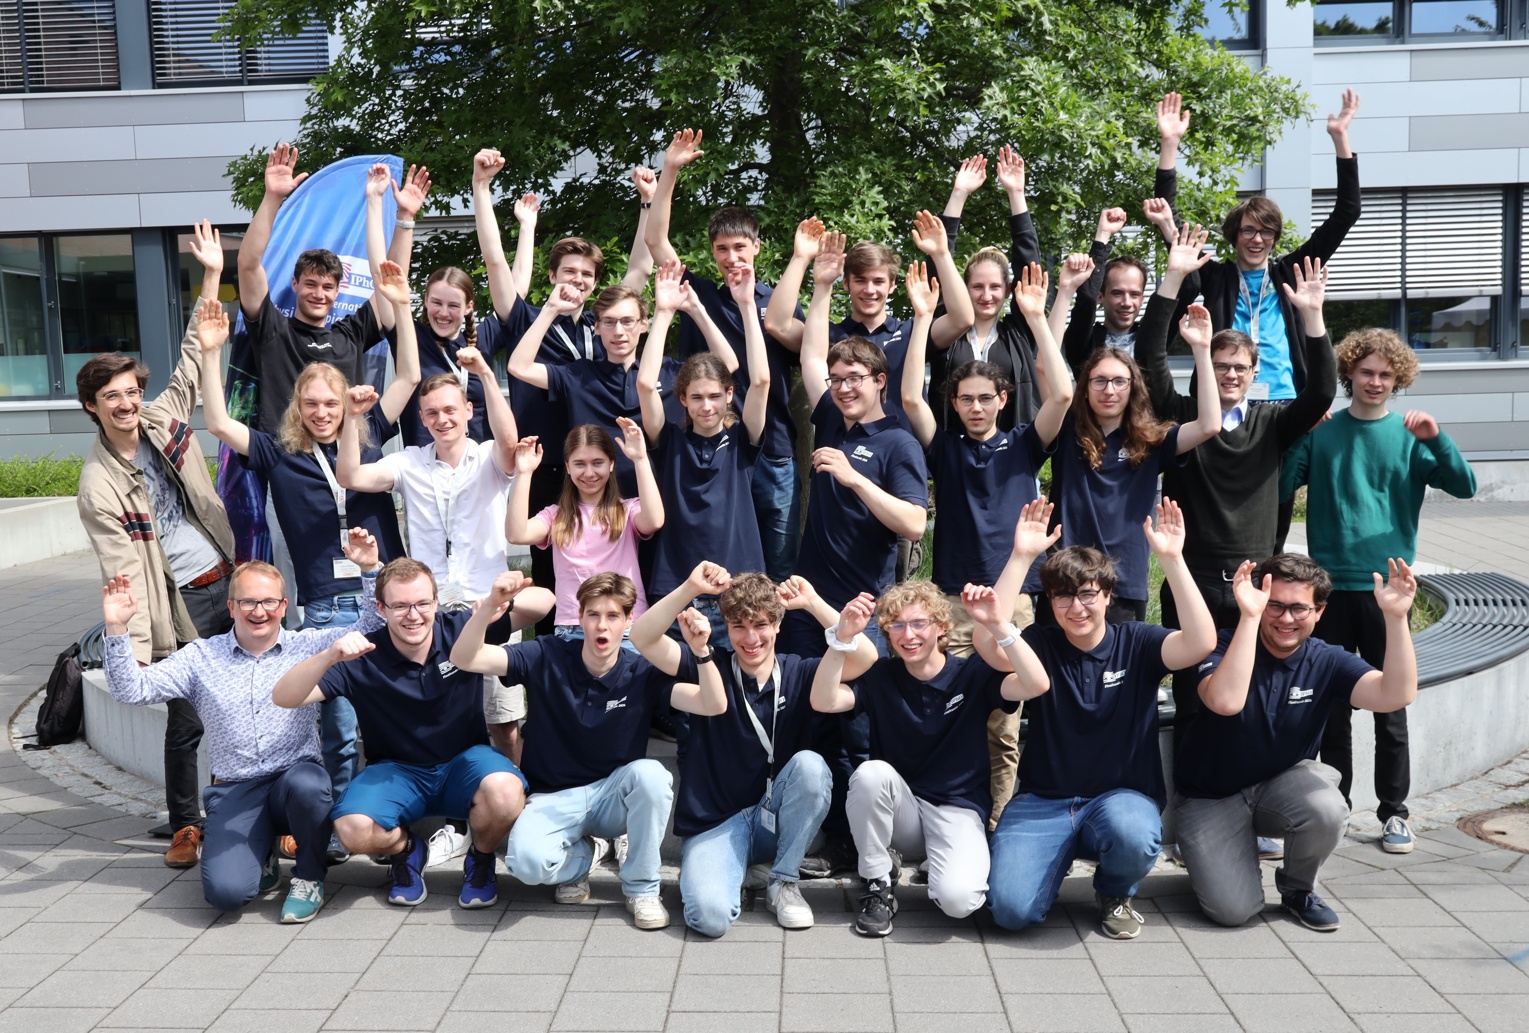 Gruppenfoto der Teilnehmenden der Finalrunde der Physikolympiade in Deutschland